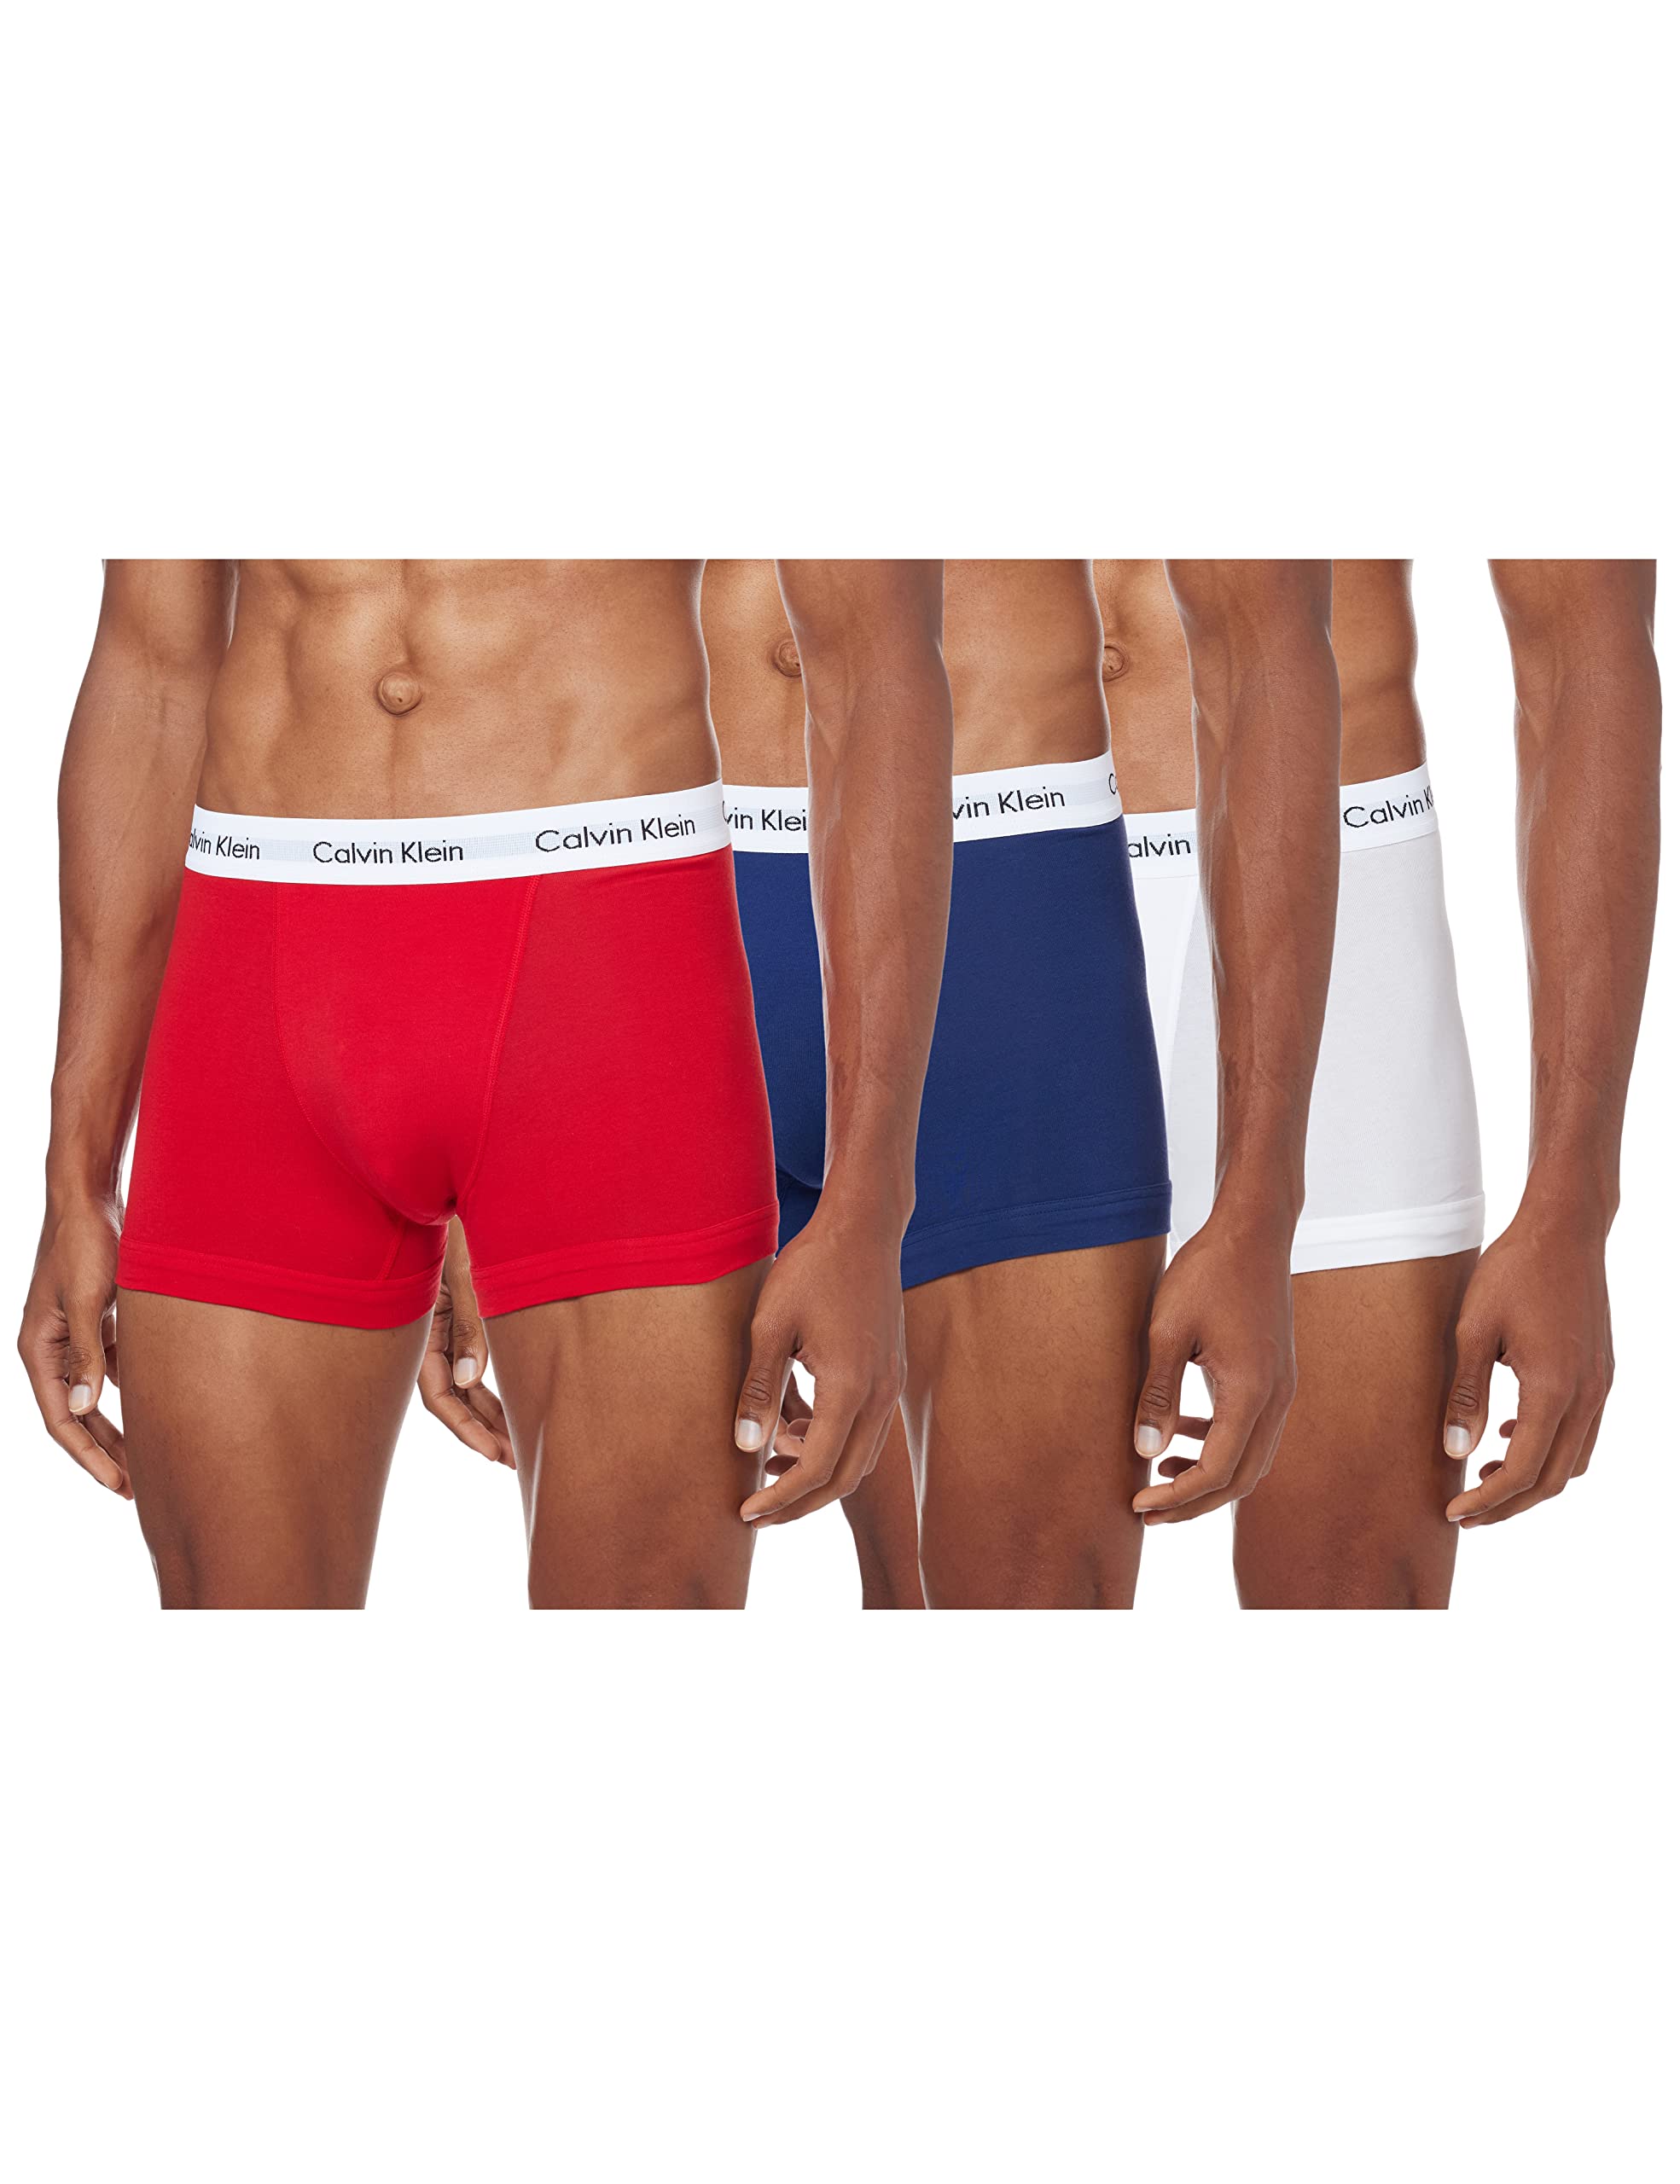 Calvin Klein Herren 3er Pack Boxershorts Trunks Baumwolle mit Stretch, Schwarz ,B-Cool Melon/Glxy Gry/Brn Belt Lg, L, White/Red Ginger/Pyro Blue, S